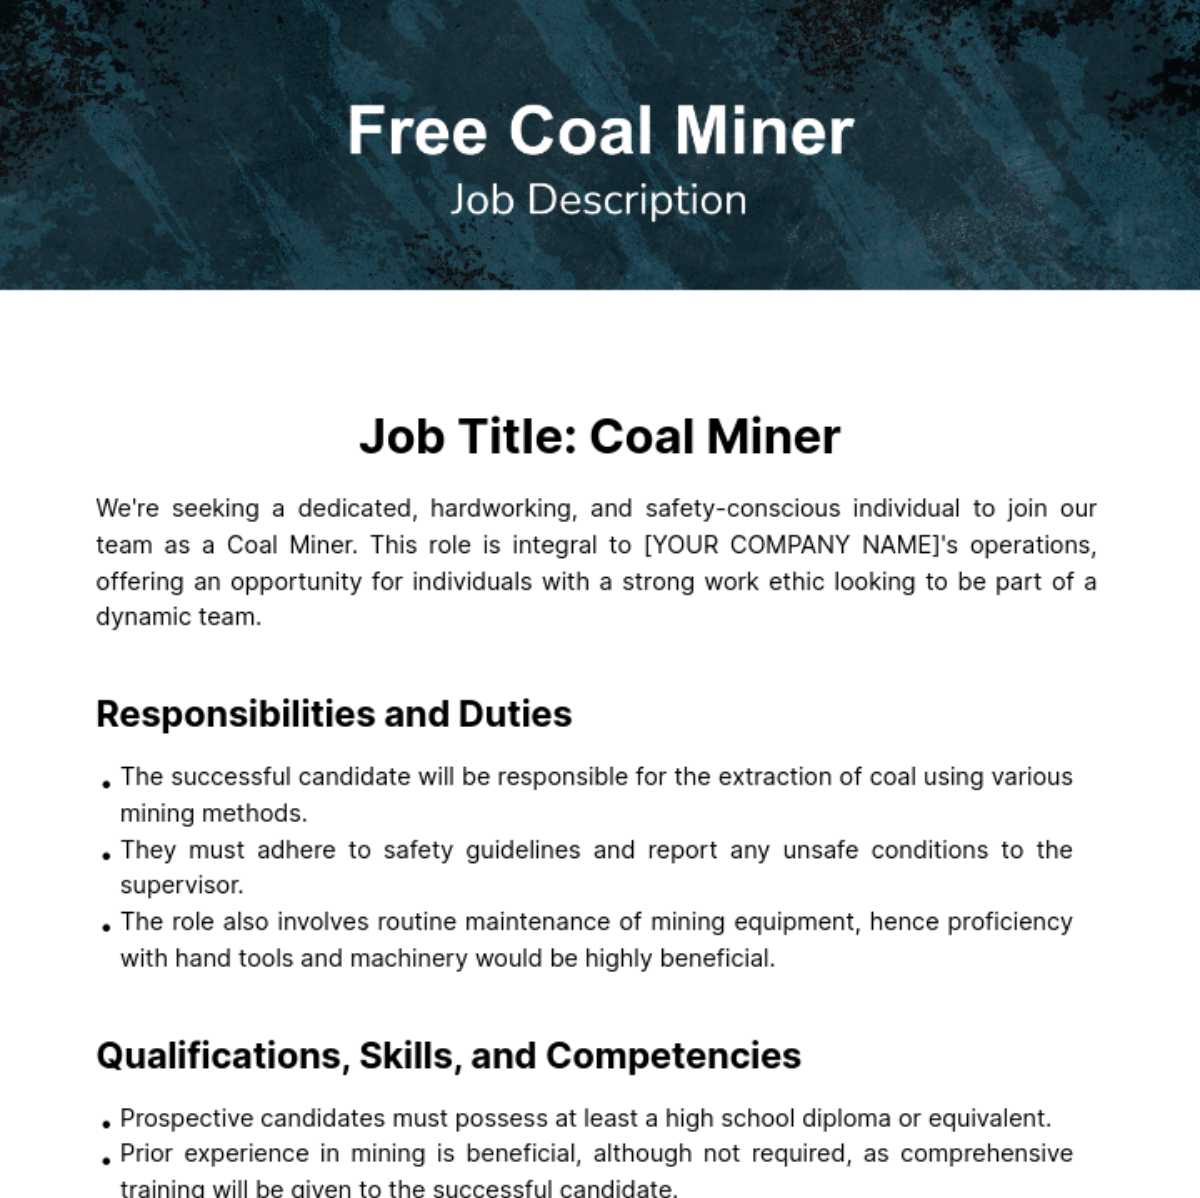 Free Coal Miner Job Description Template